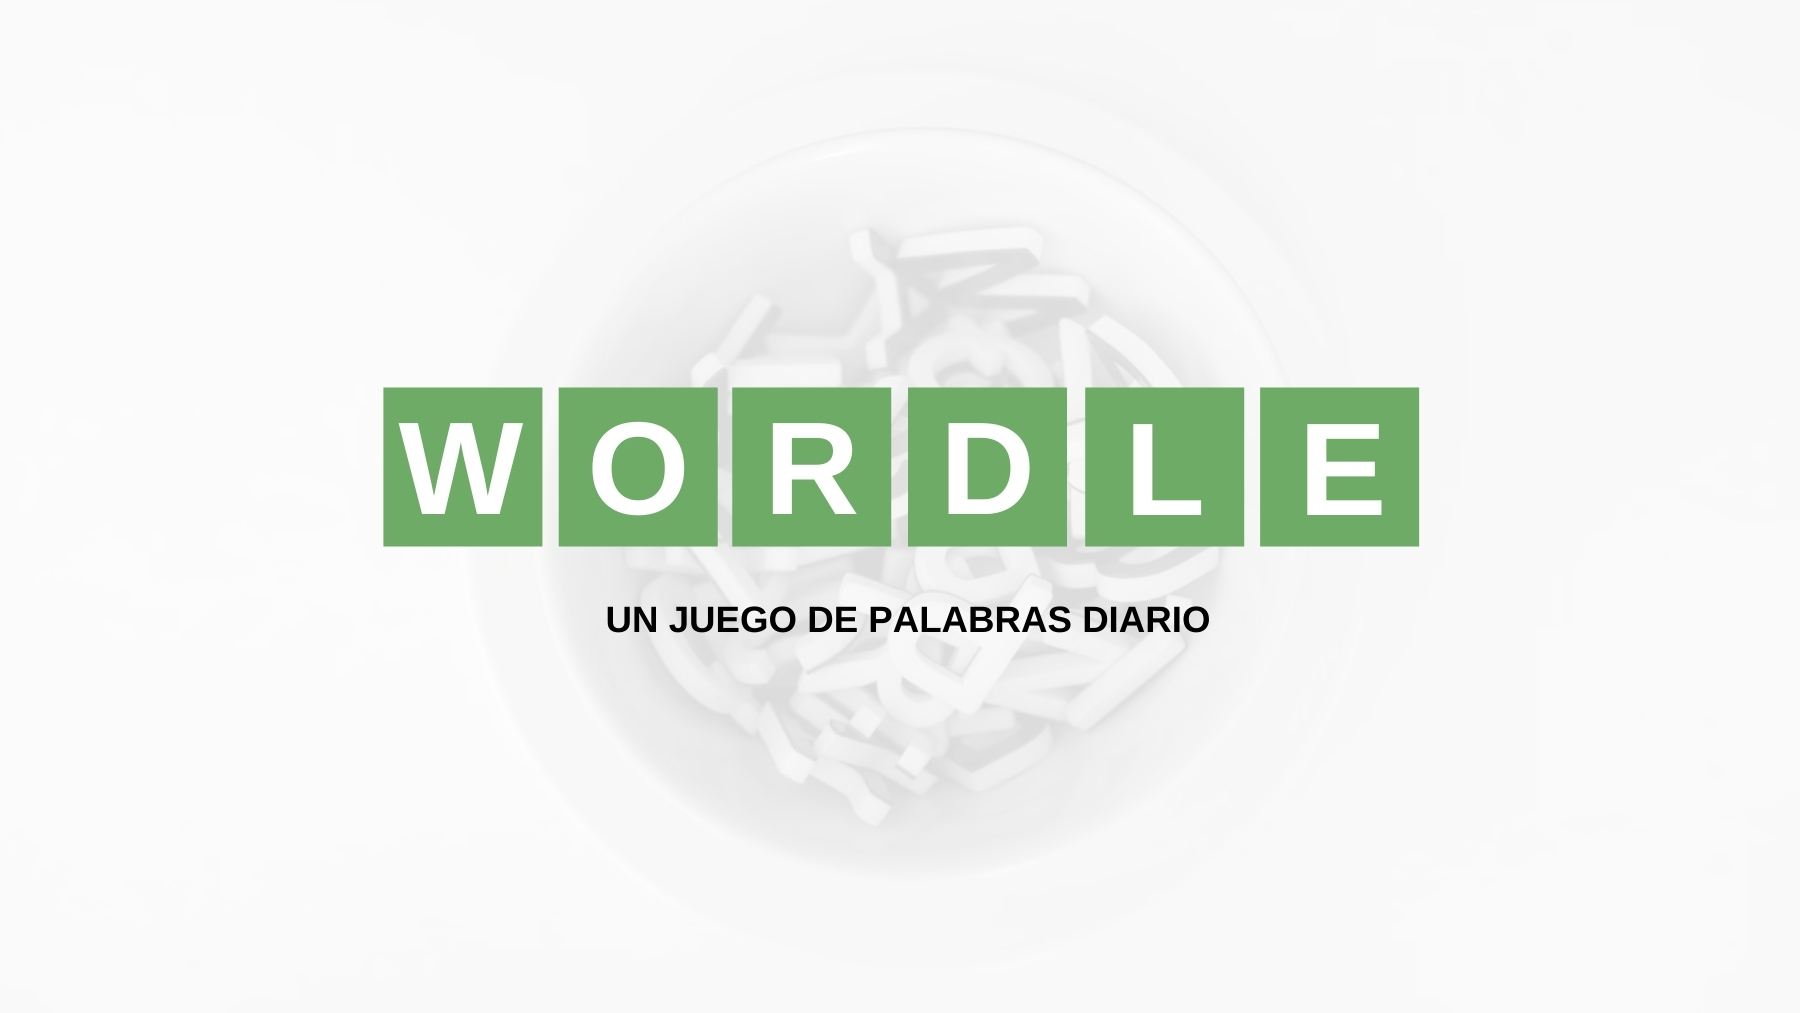 Solución palabra Wordle español, científico y con tildes hoy, miércoles 25 de mayo de 2022